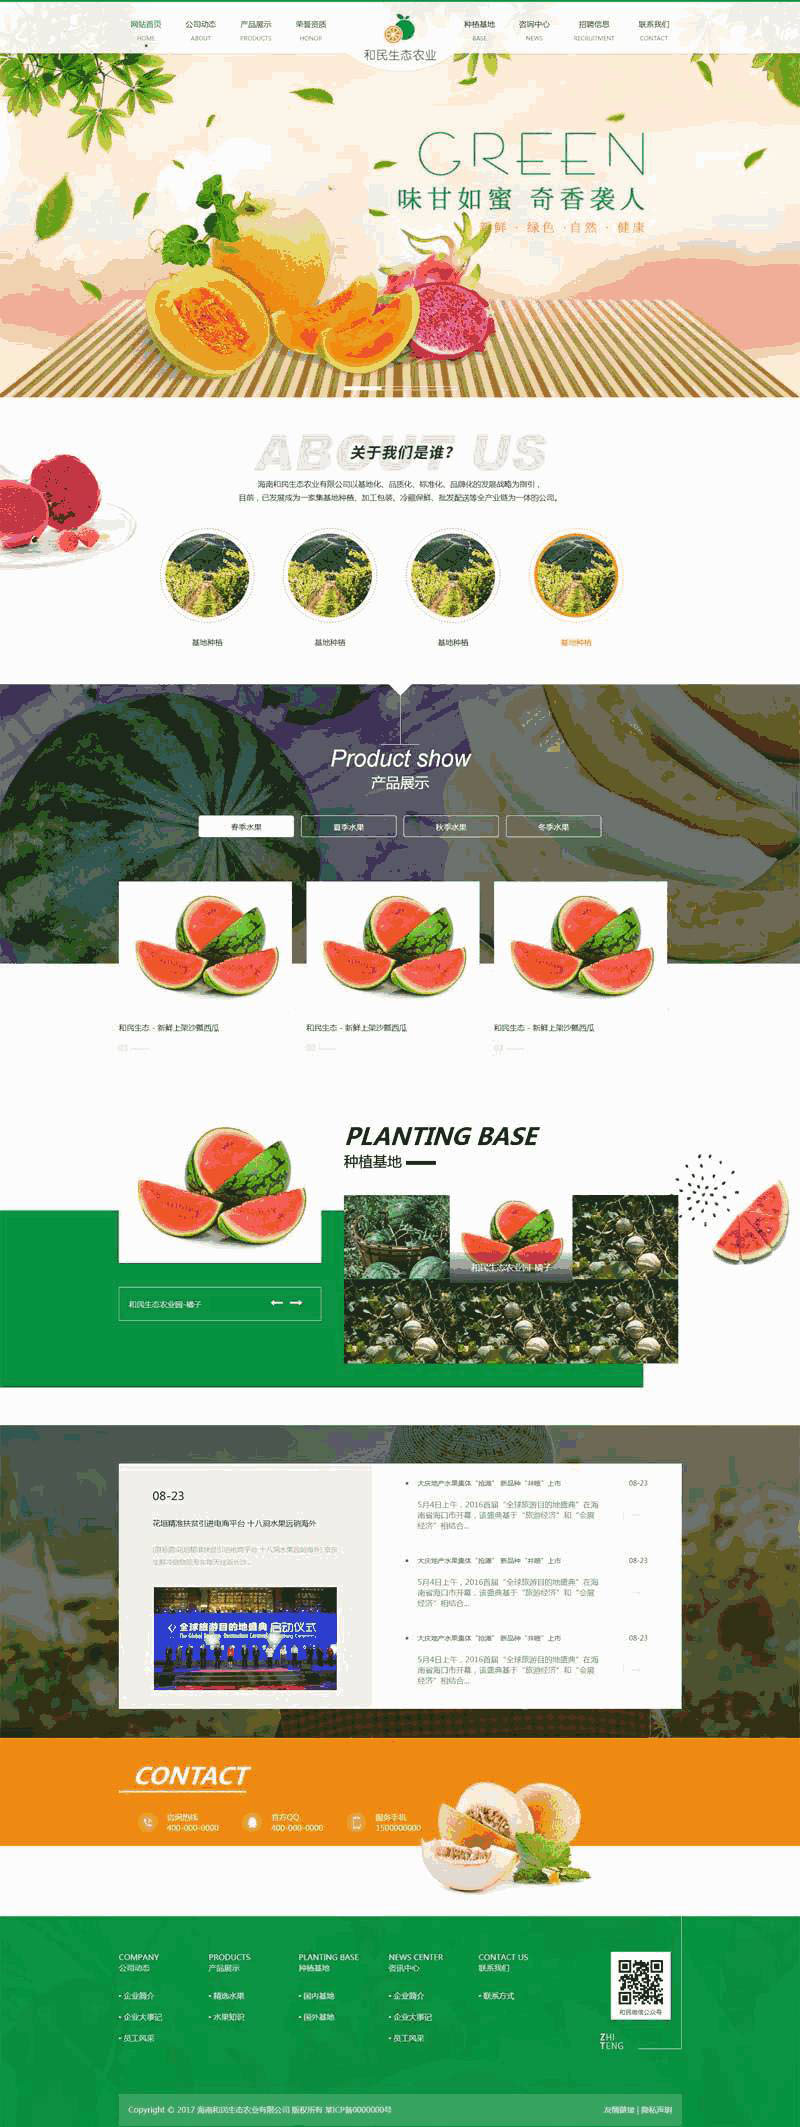 绿色的生态农业水果种植公司网站Wordpress模板（带手机版）效果图